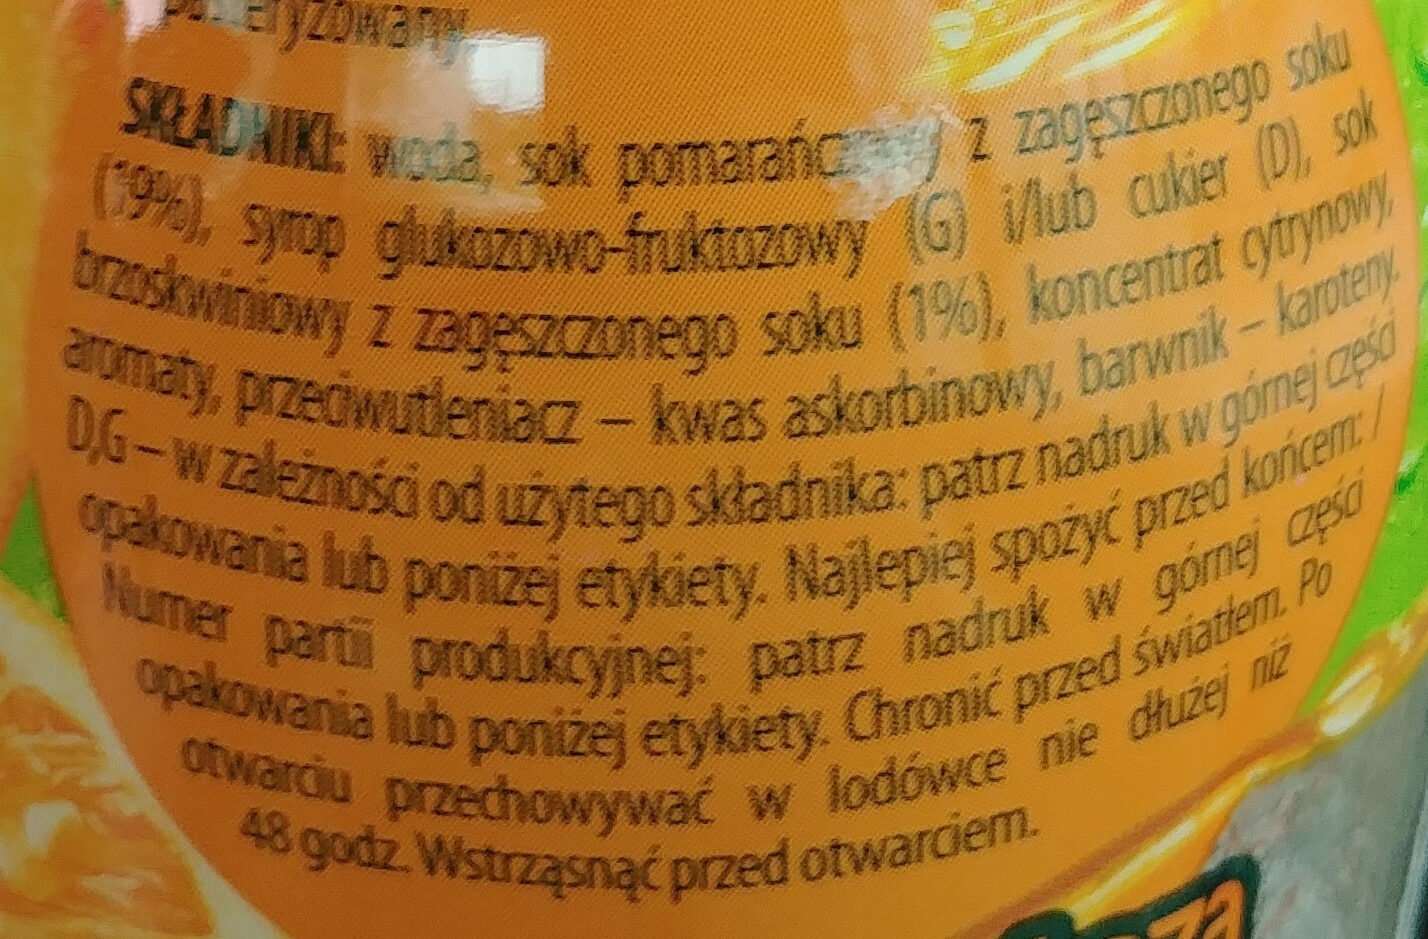 Tymbark pomaracza brzoskwinia - Ingrédients - pl